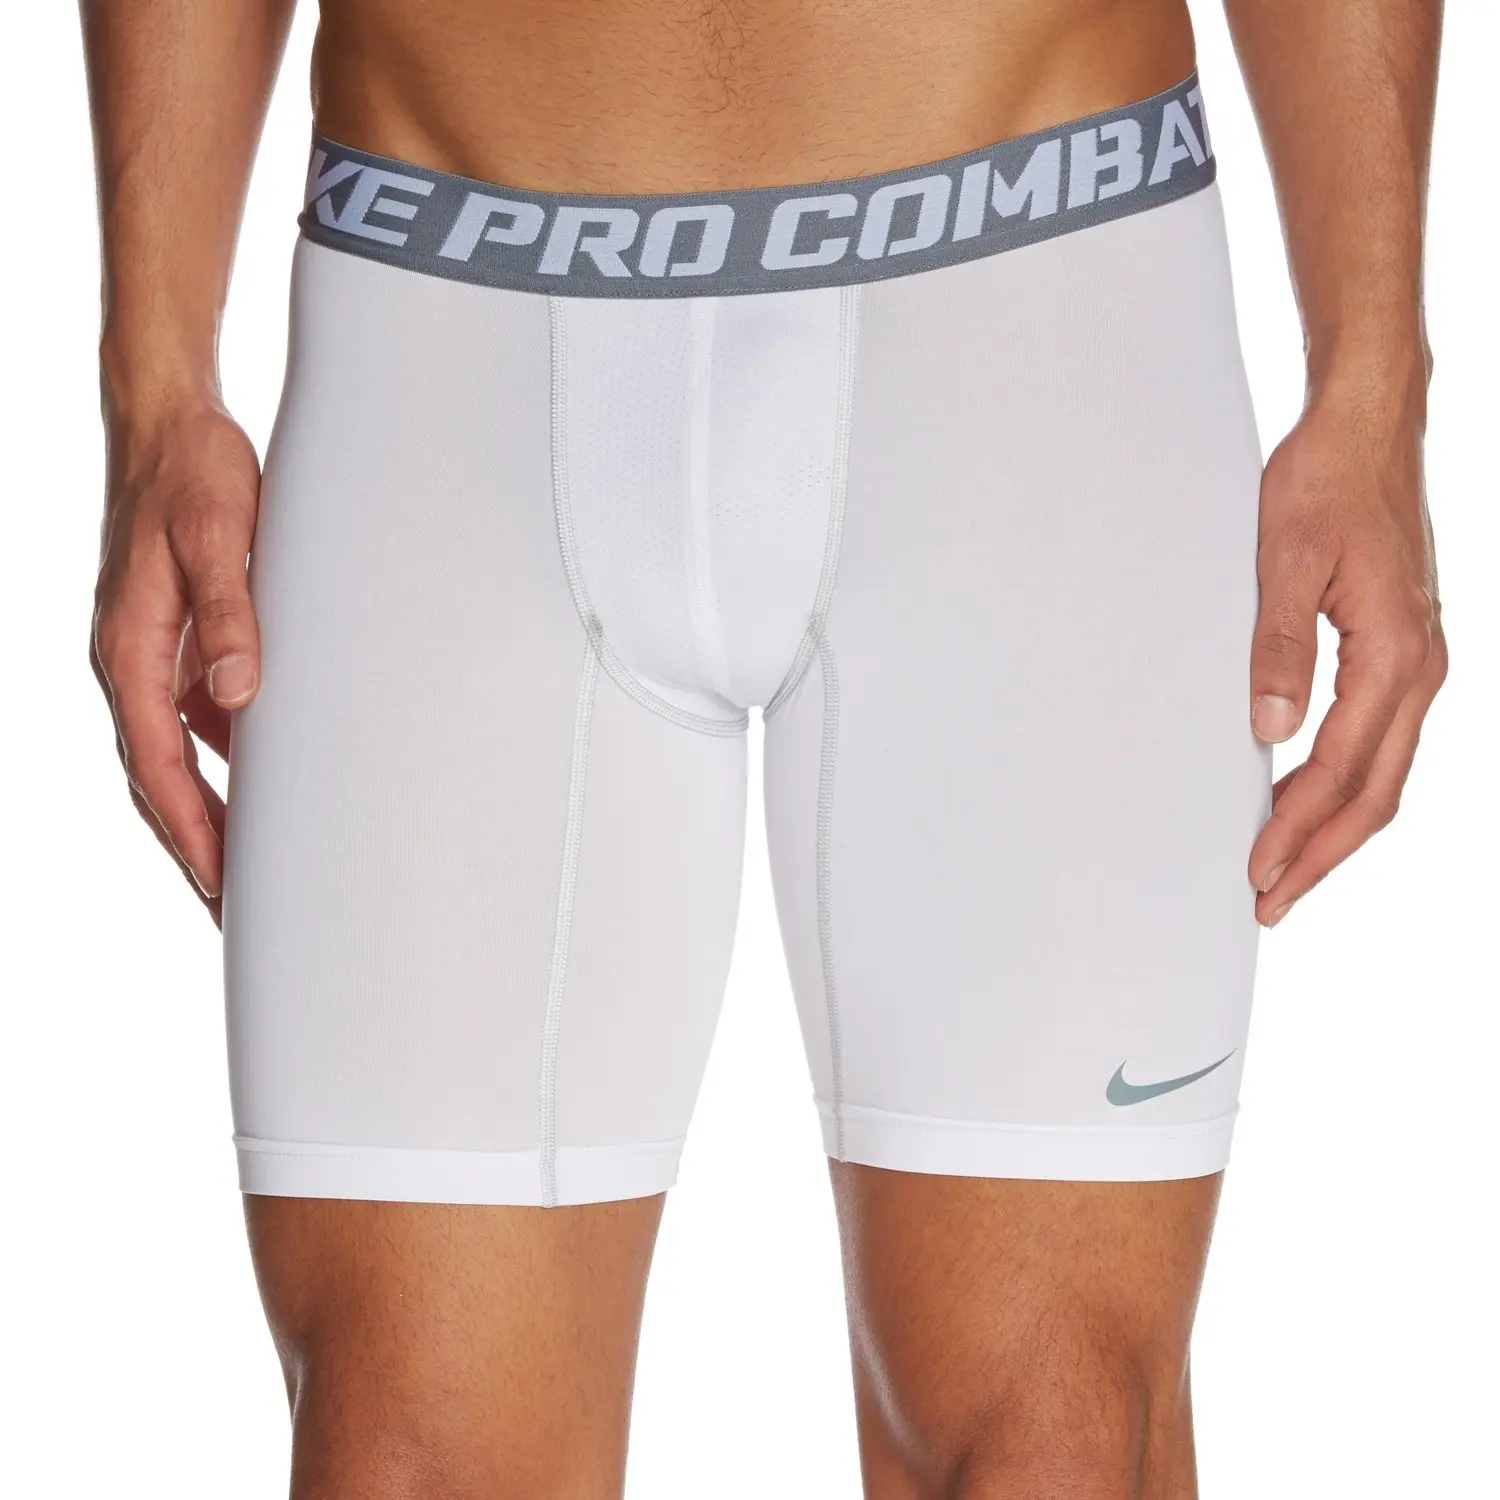 pro combat compression shorts